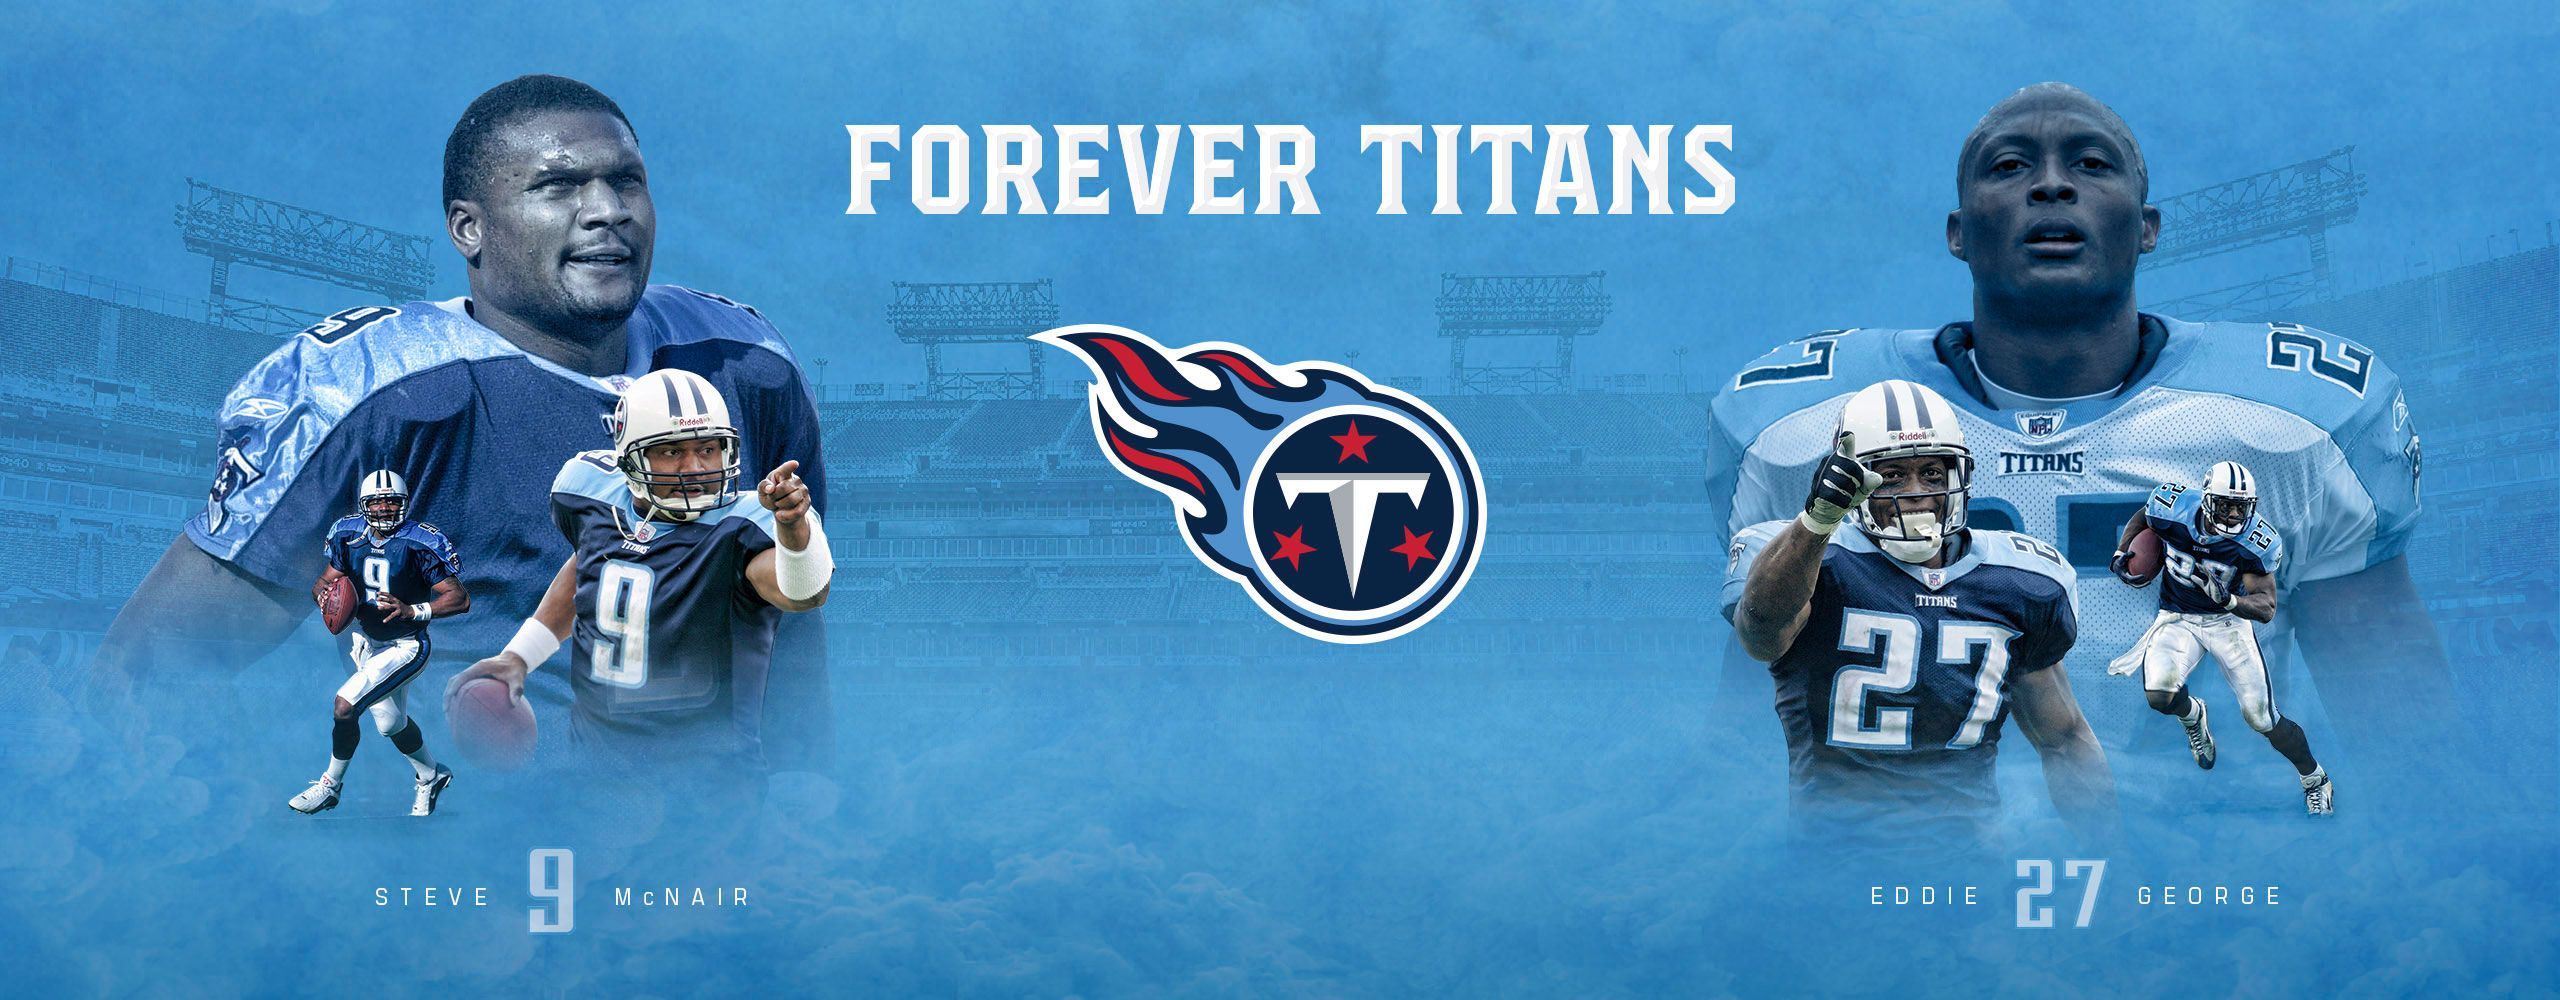 Tennessee Titans Steve McNair and Eddie George Wallpaper